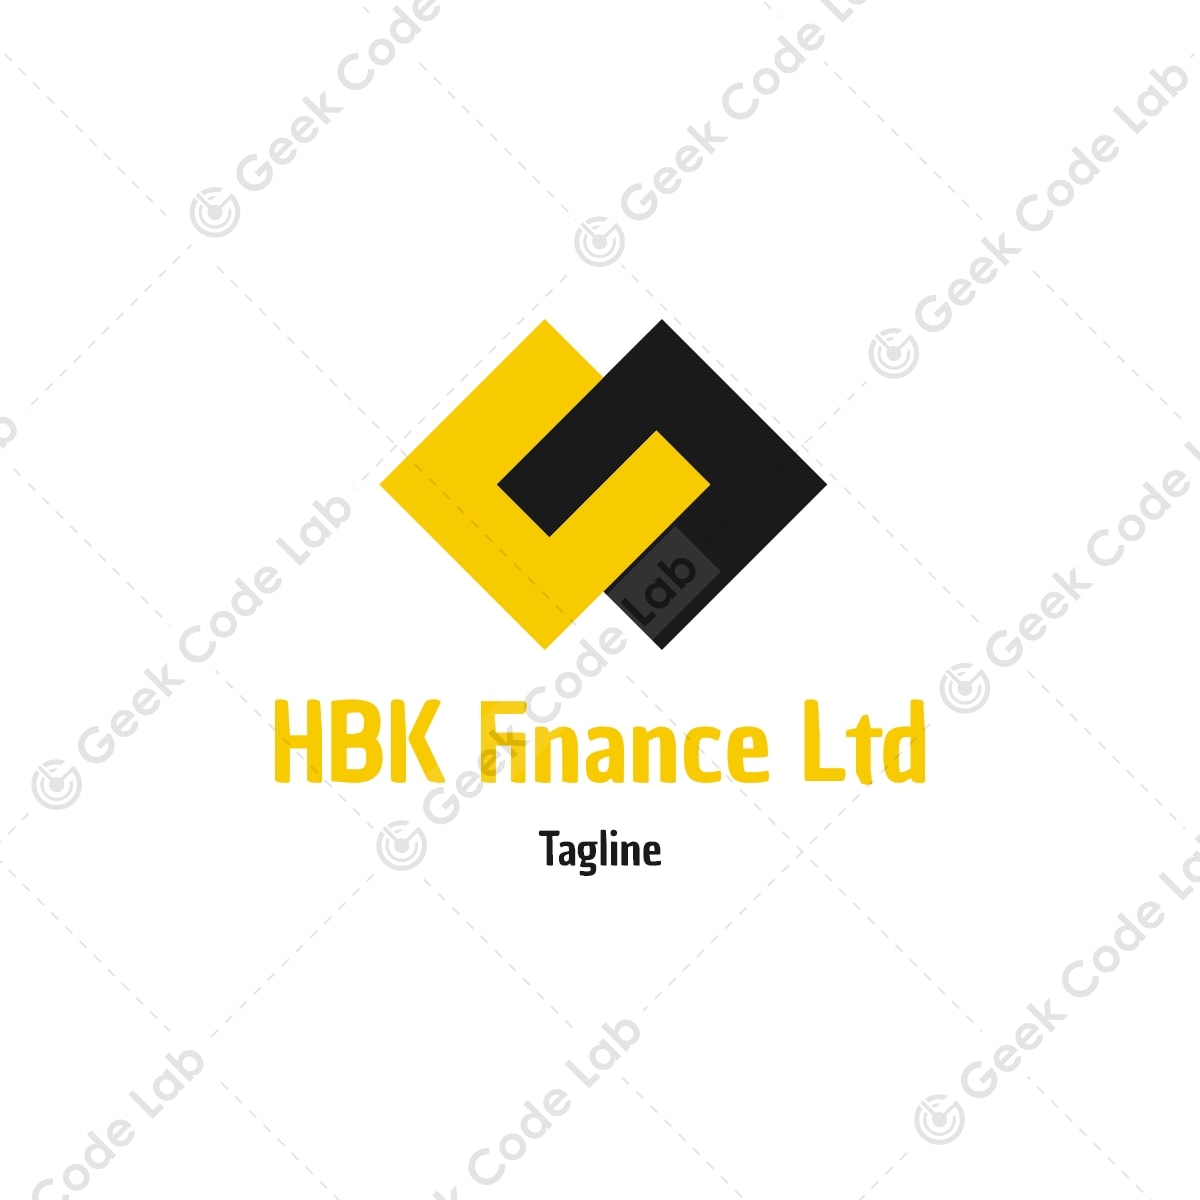 HBK Finance Ltd